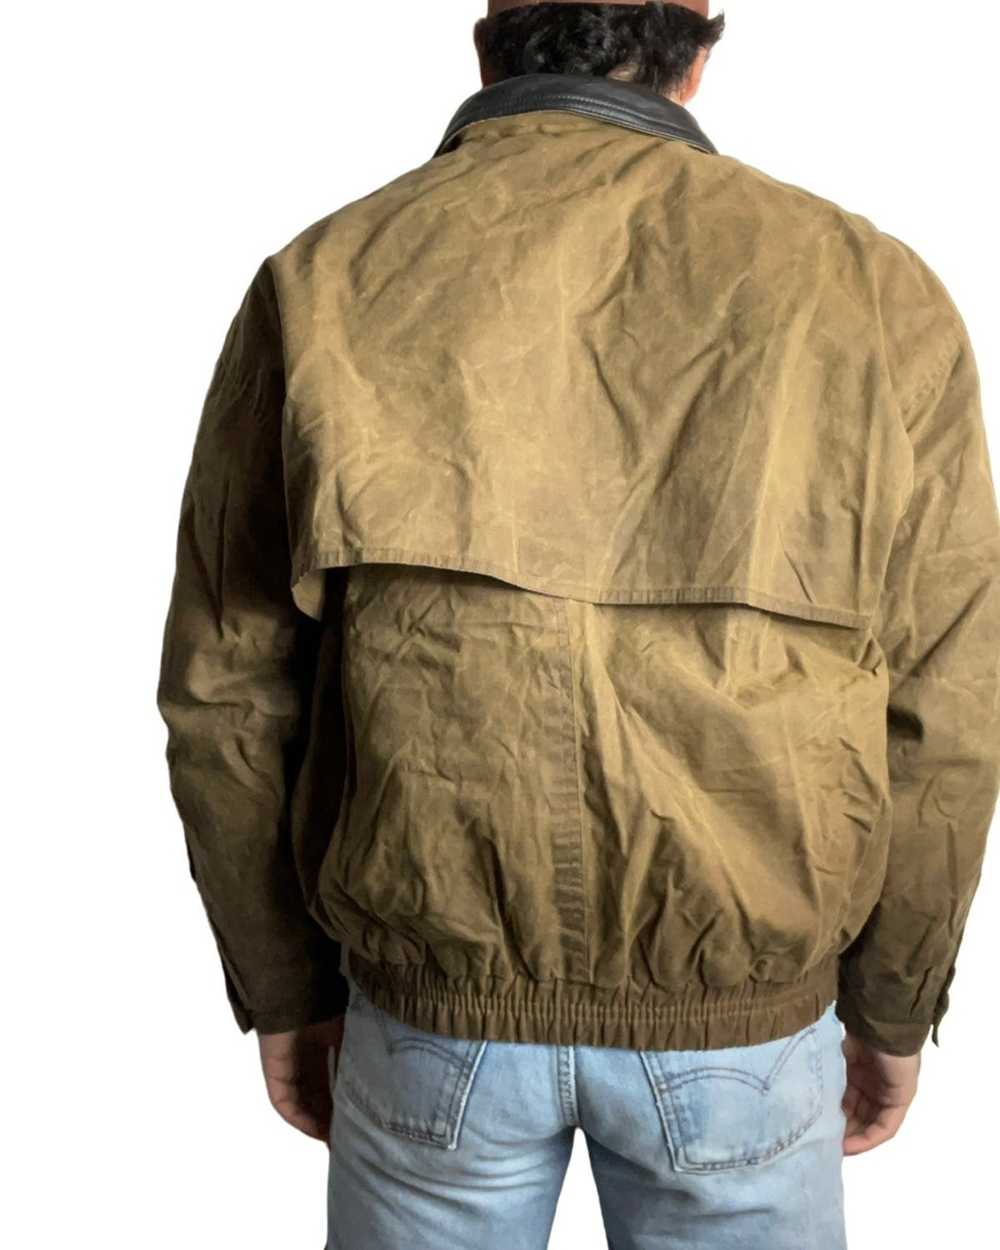 Vintage Worker vintage jacket - image 2